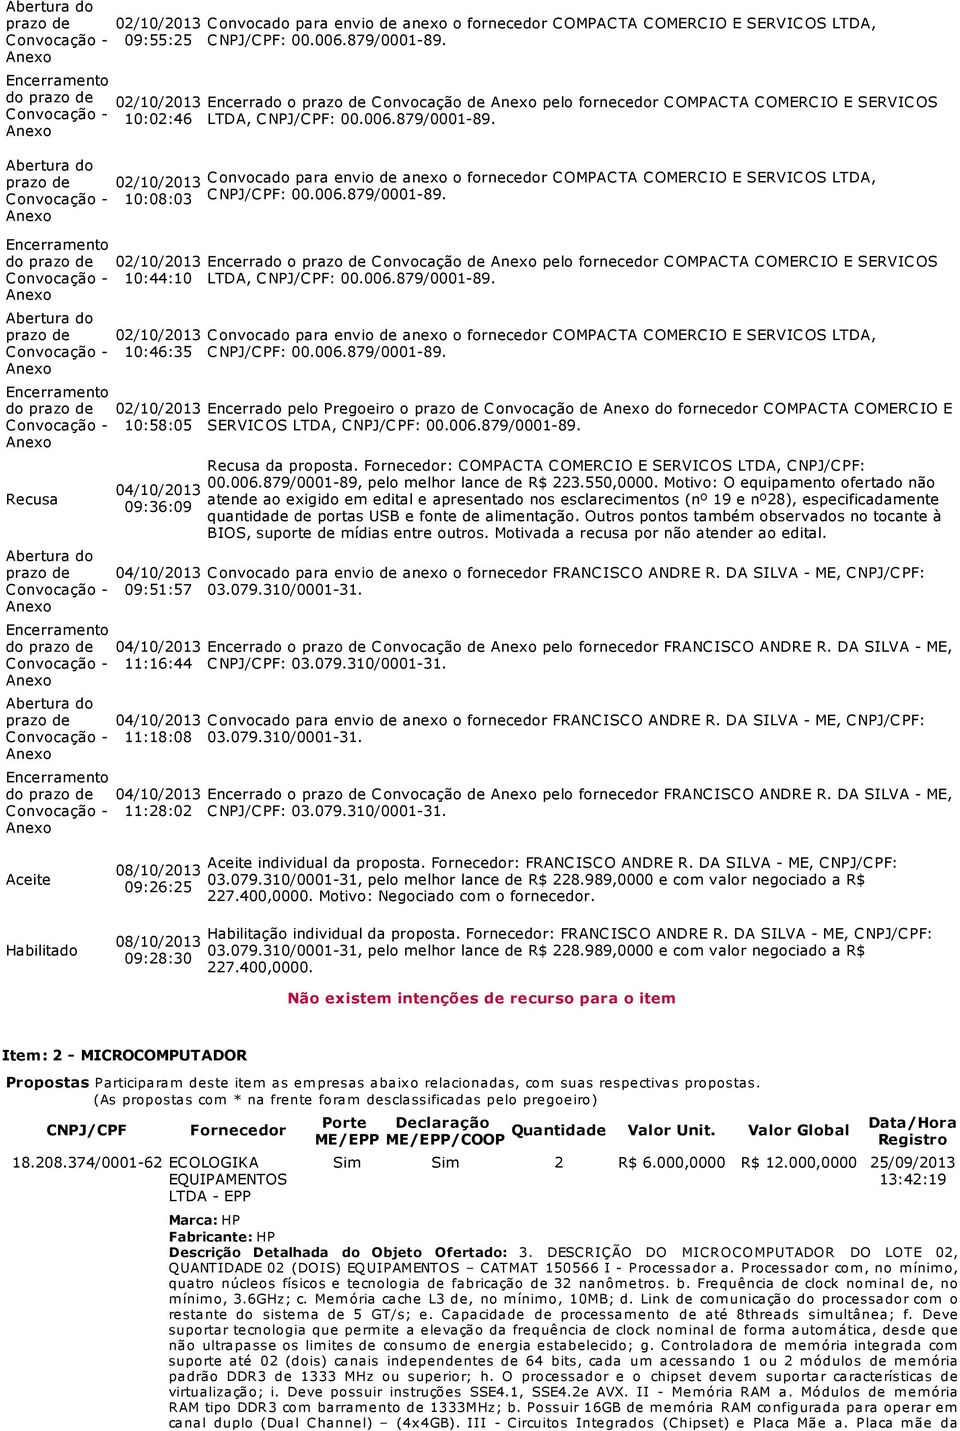 prazo de 02/10/2013 Convocado para envio de anexo o fornecedor COMPACTA COMERCIO E SERVICOS LTDA, 10:08:03 CNPJ/CPF:.